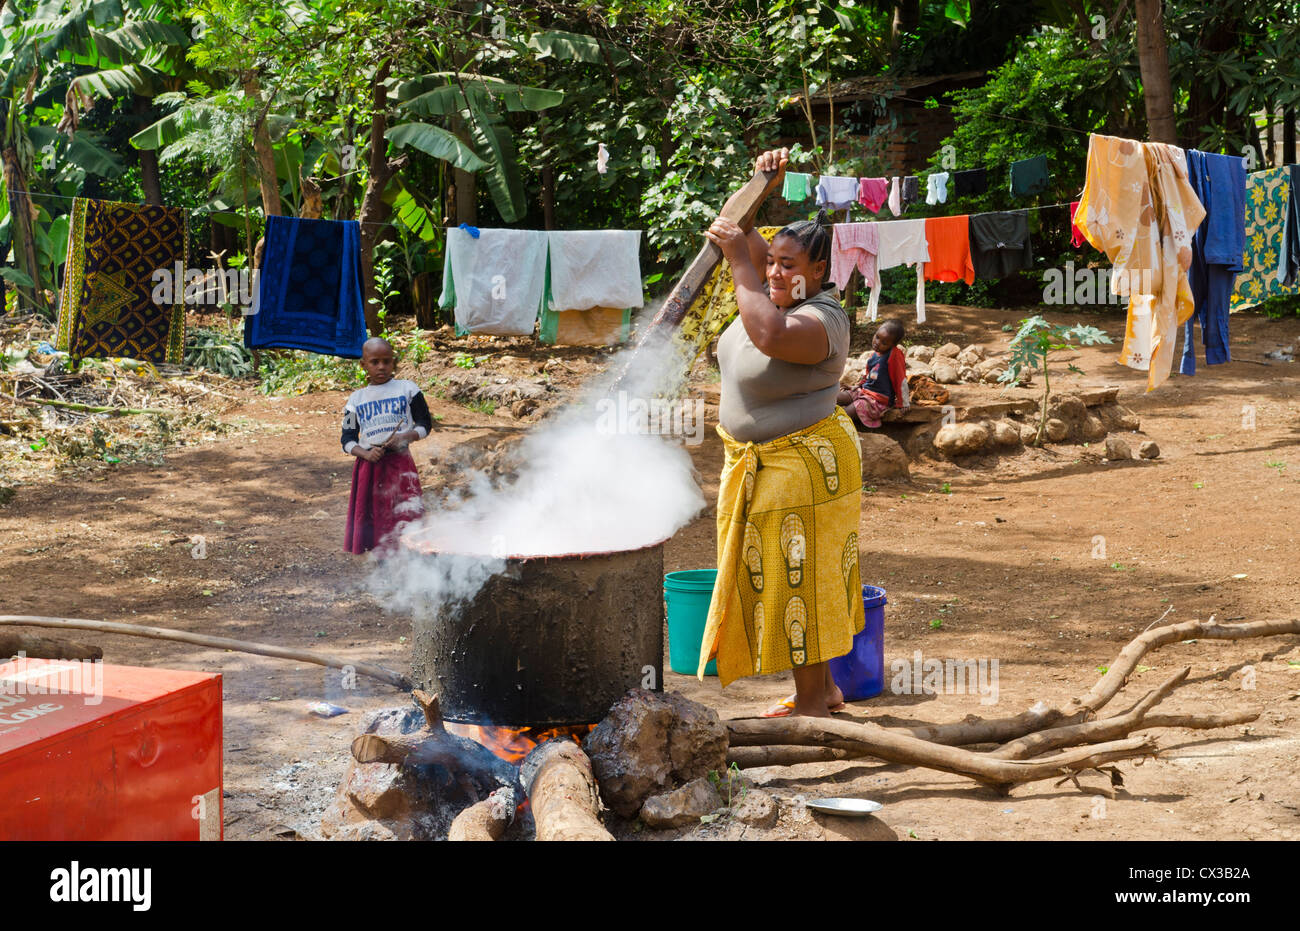 Village de moustiques Mto wa Mbu Afrique Tanzanie village woman cooking pot de bière de banane pour la vente aux touristes # 6 Banque D'Images